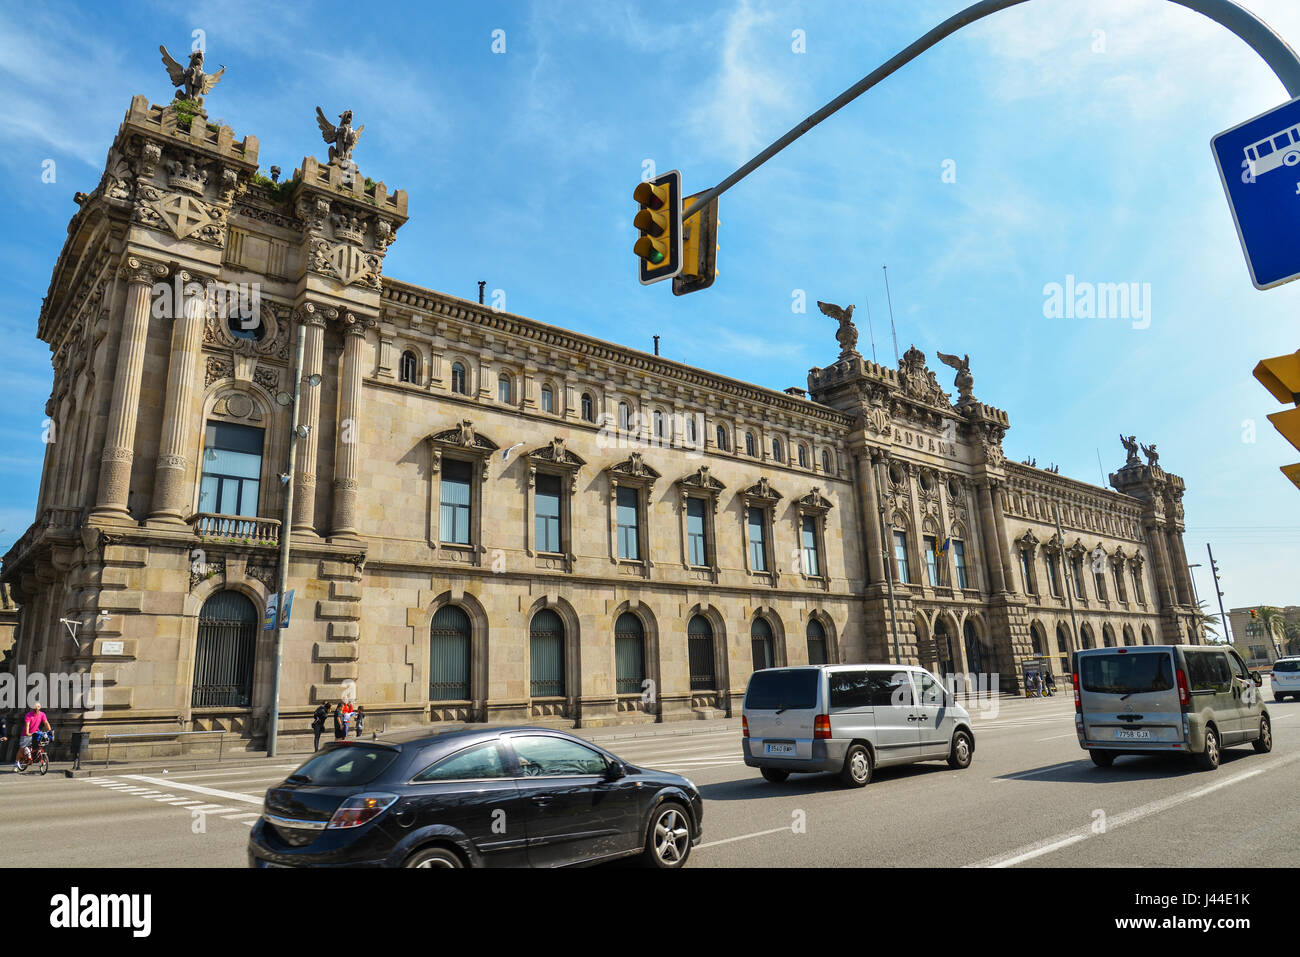 BARCELONA, SPAIN - April 15, 2017: Architecture, classic style, Custom building, Edificio de la Aduana del Puerto, by Enric Sagnier i Villavecchia and Stock Photo